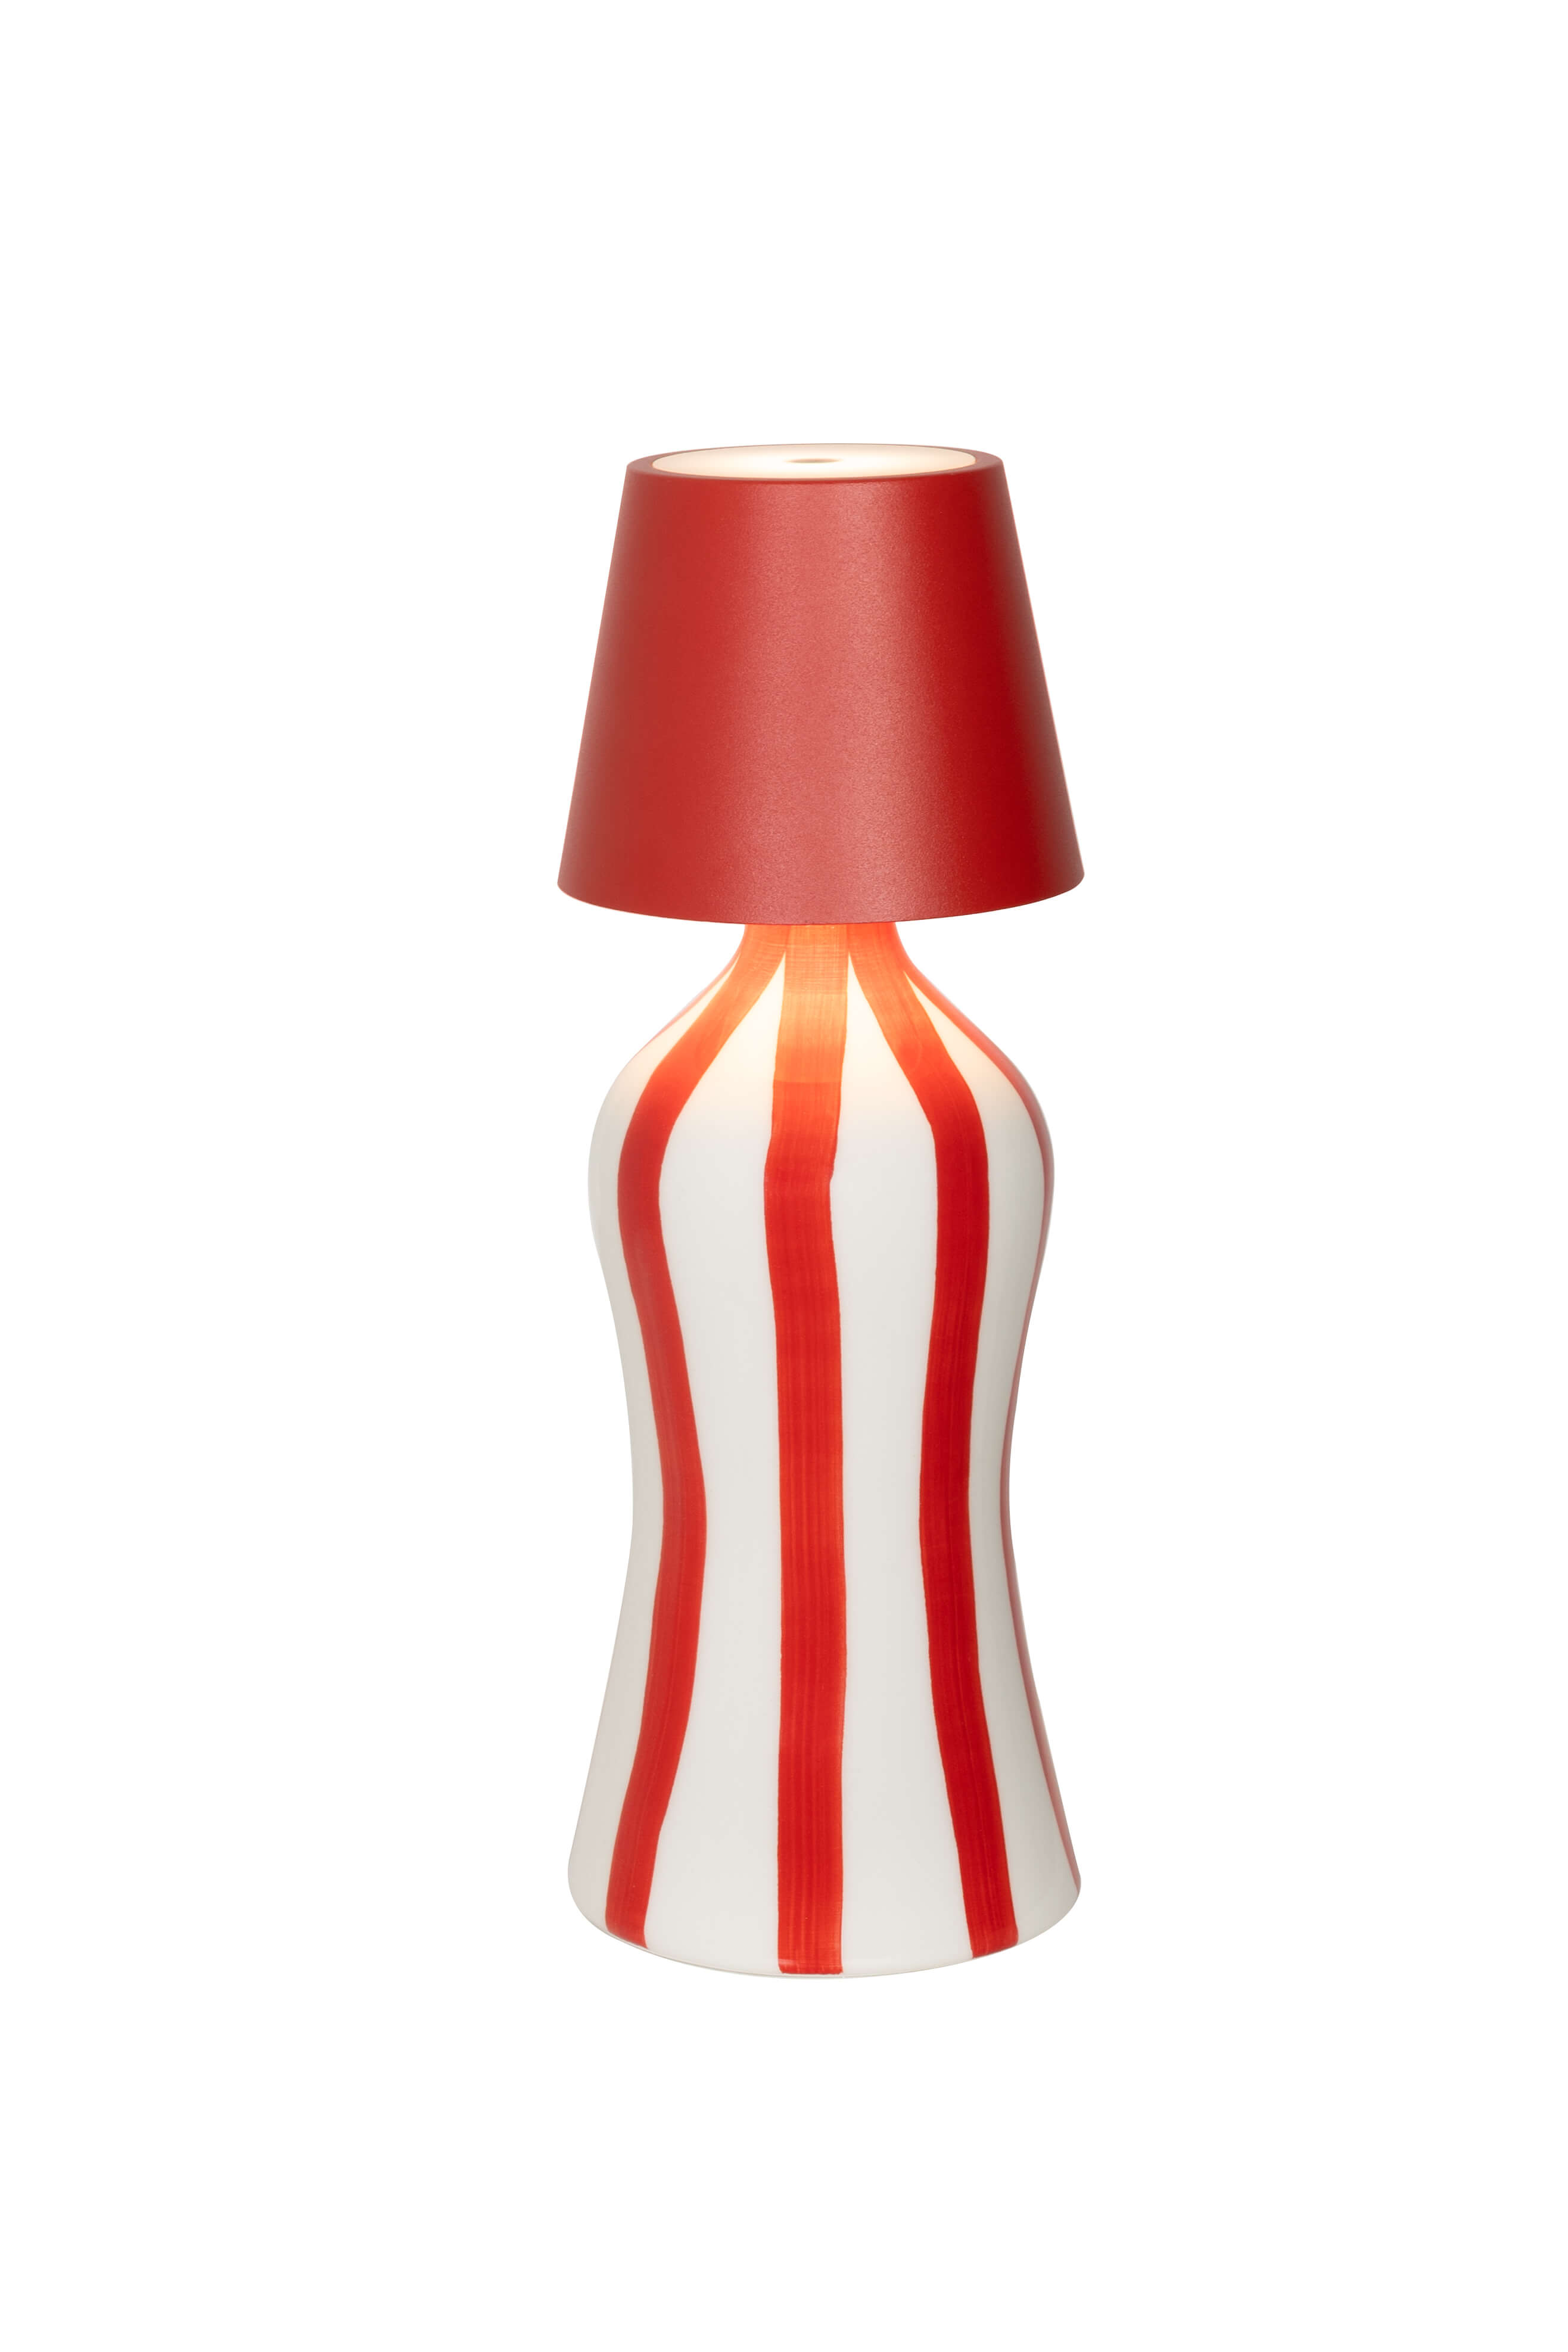 Zafferano Poldina Stopper Rosso / Red + Lido Keramik Flasche mit vertikalen Streifen in Rot